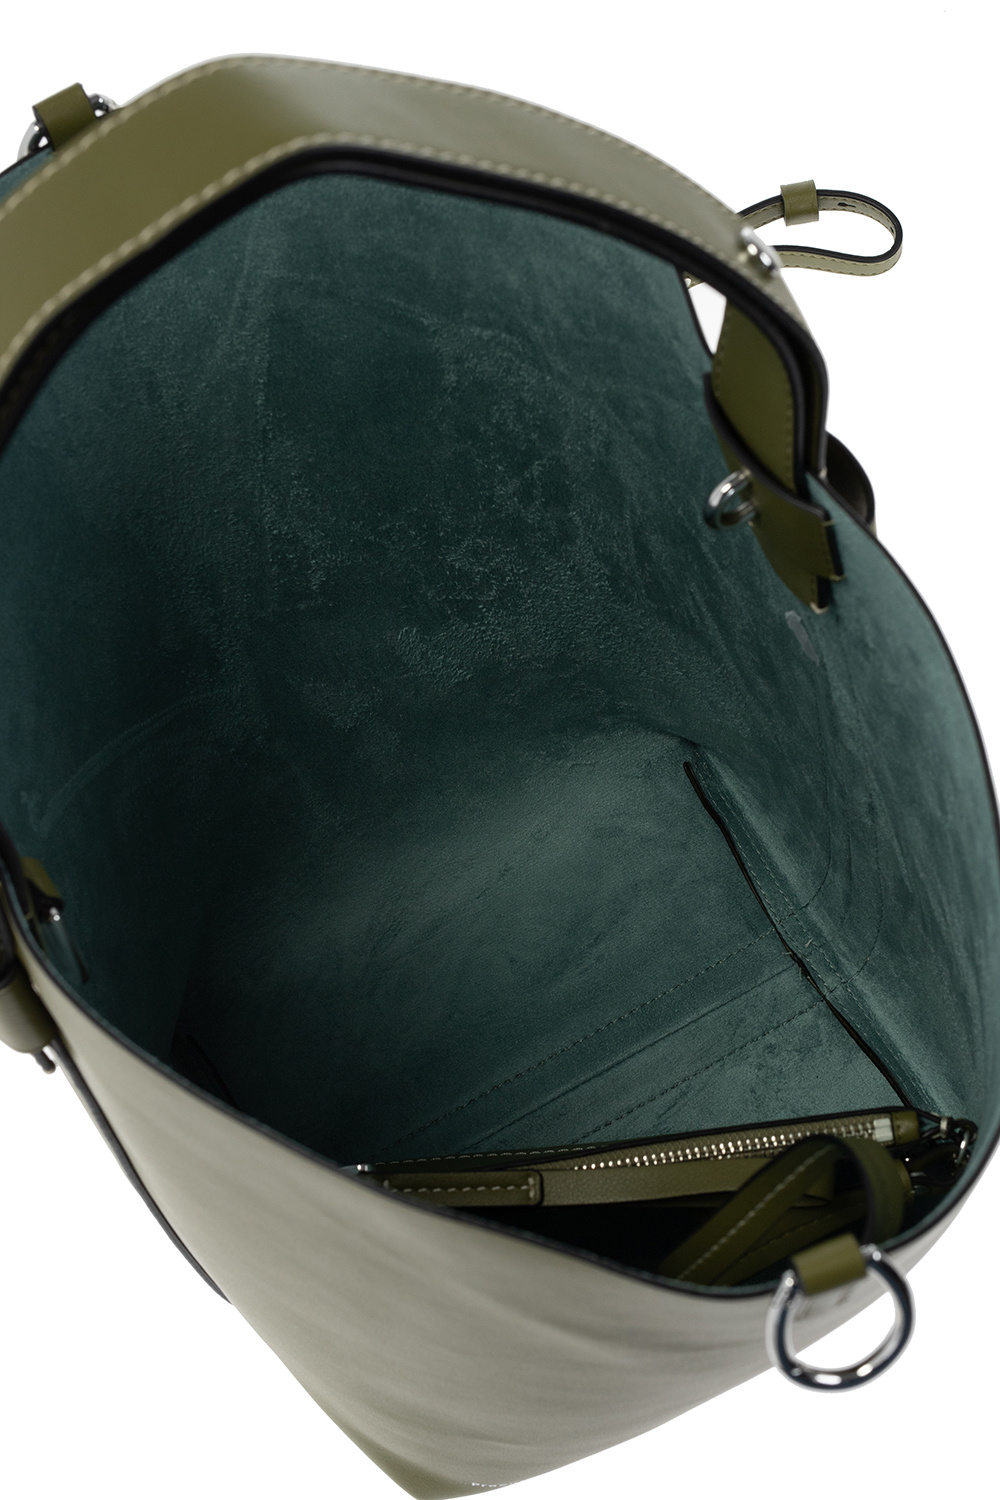 Proenza Schouler hammered satin shirt ‘Sullivan’ leather shoulder bag